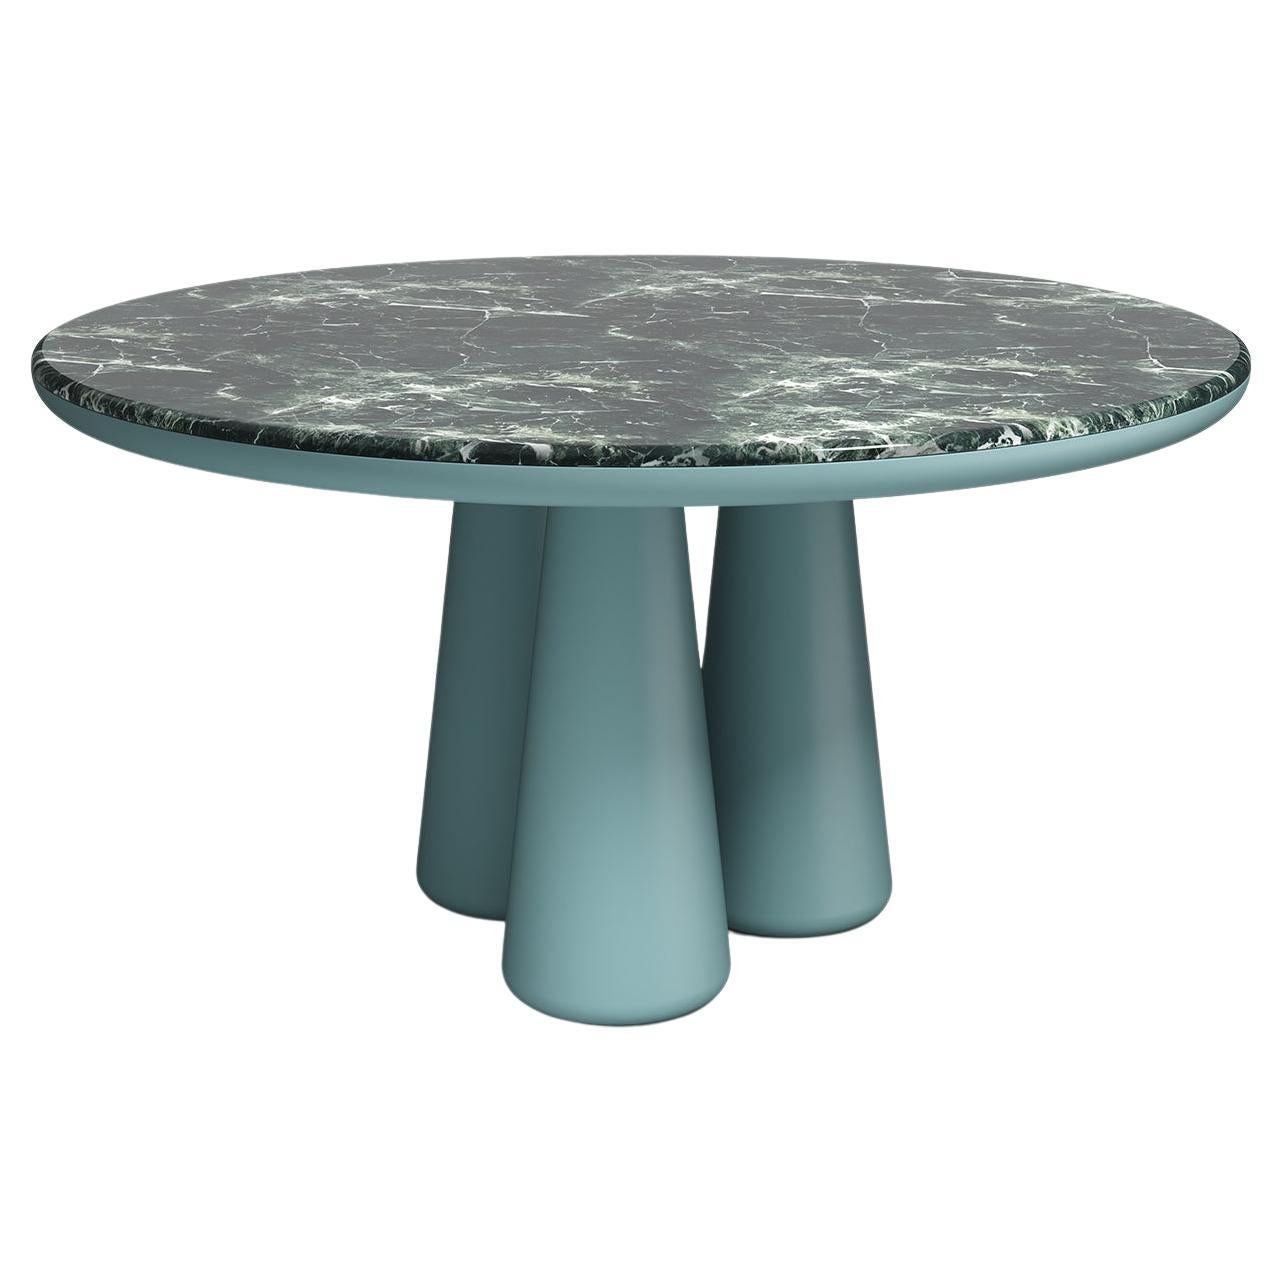 Table Isotopo Design/One, produit par Scapin Collezioni
Édition limitée

Un plateau rond vibrant est associé à une base sculpturale composée de trois supports coniques arrondis qui confèrent au produit une forte tridimensionnalité.
Matériaux :